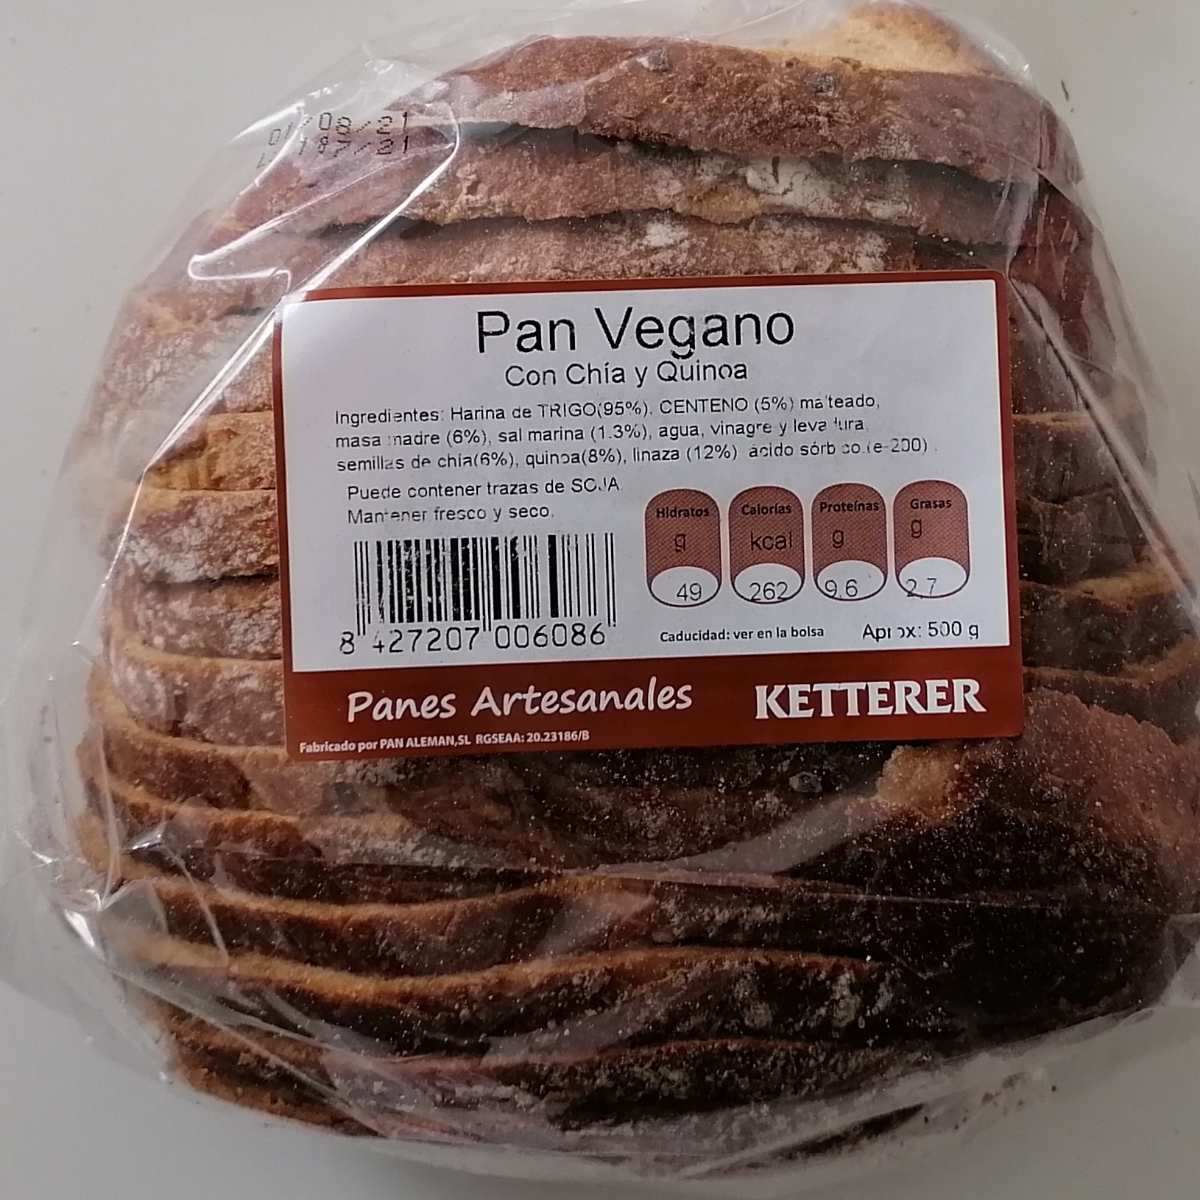 Ketterer Pan Vegano con Chía y quinoa Review | abillion